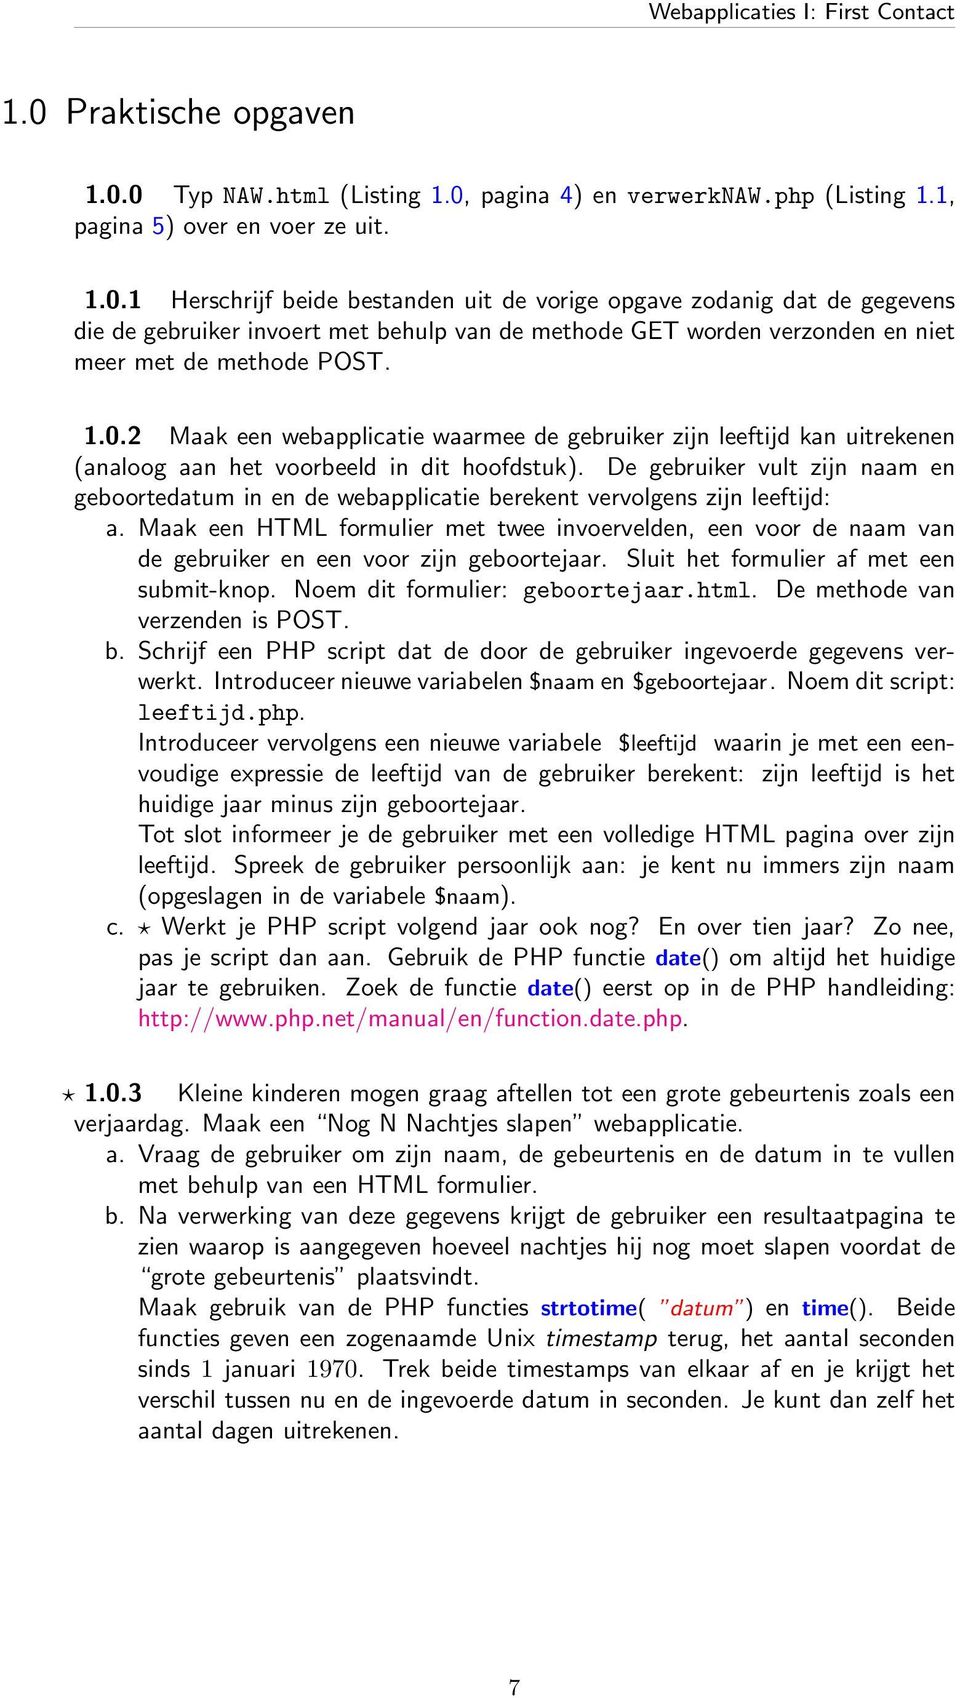 0 Typ NAW.html (Listing 1.0, pagina 4) en verwerknaw.php (Listing 1.1, pagina 5) over en voer ze uit. 1.0.1 Herschrijf beide bestanden uit de vorige opgave zodanig dat de gegevens die de gebruiker invoert met behulp van de methode GET worden verzonden en niet meer met de methode POST.